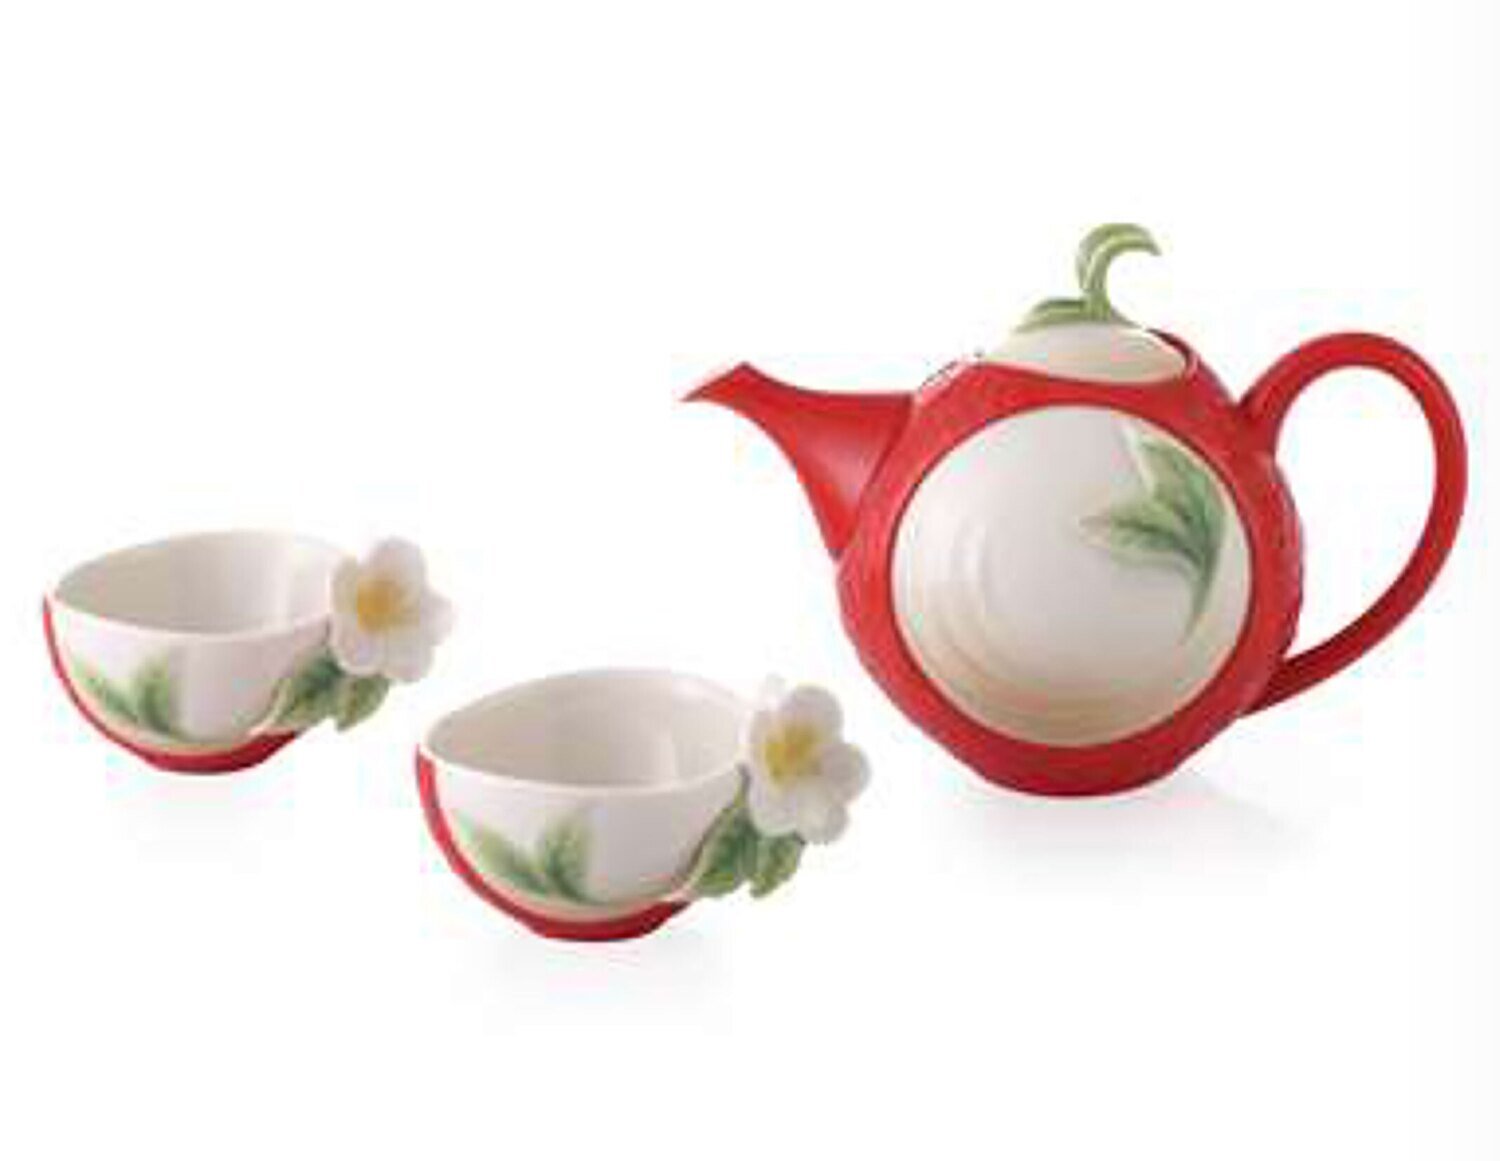 Franz Porcelain Happiness and Wisdom Camellia Design Tea Set FZ03597